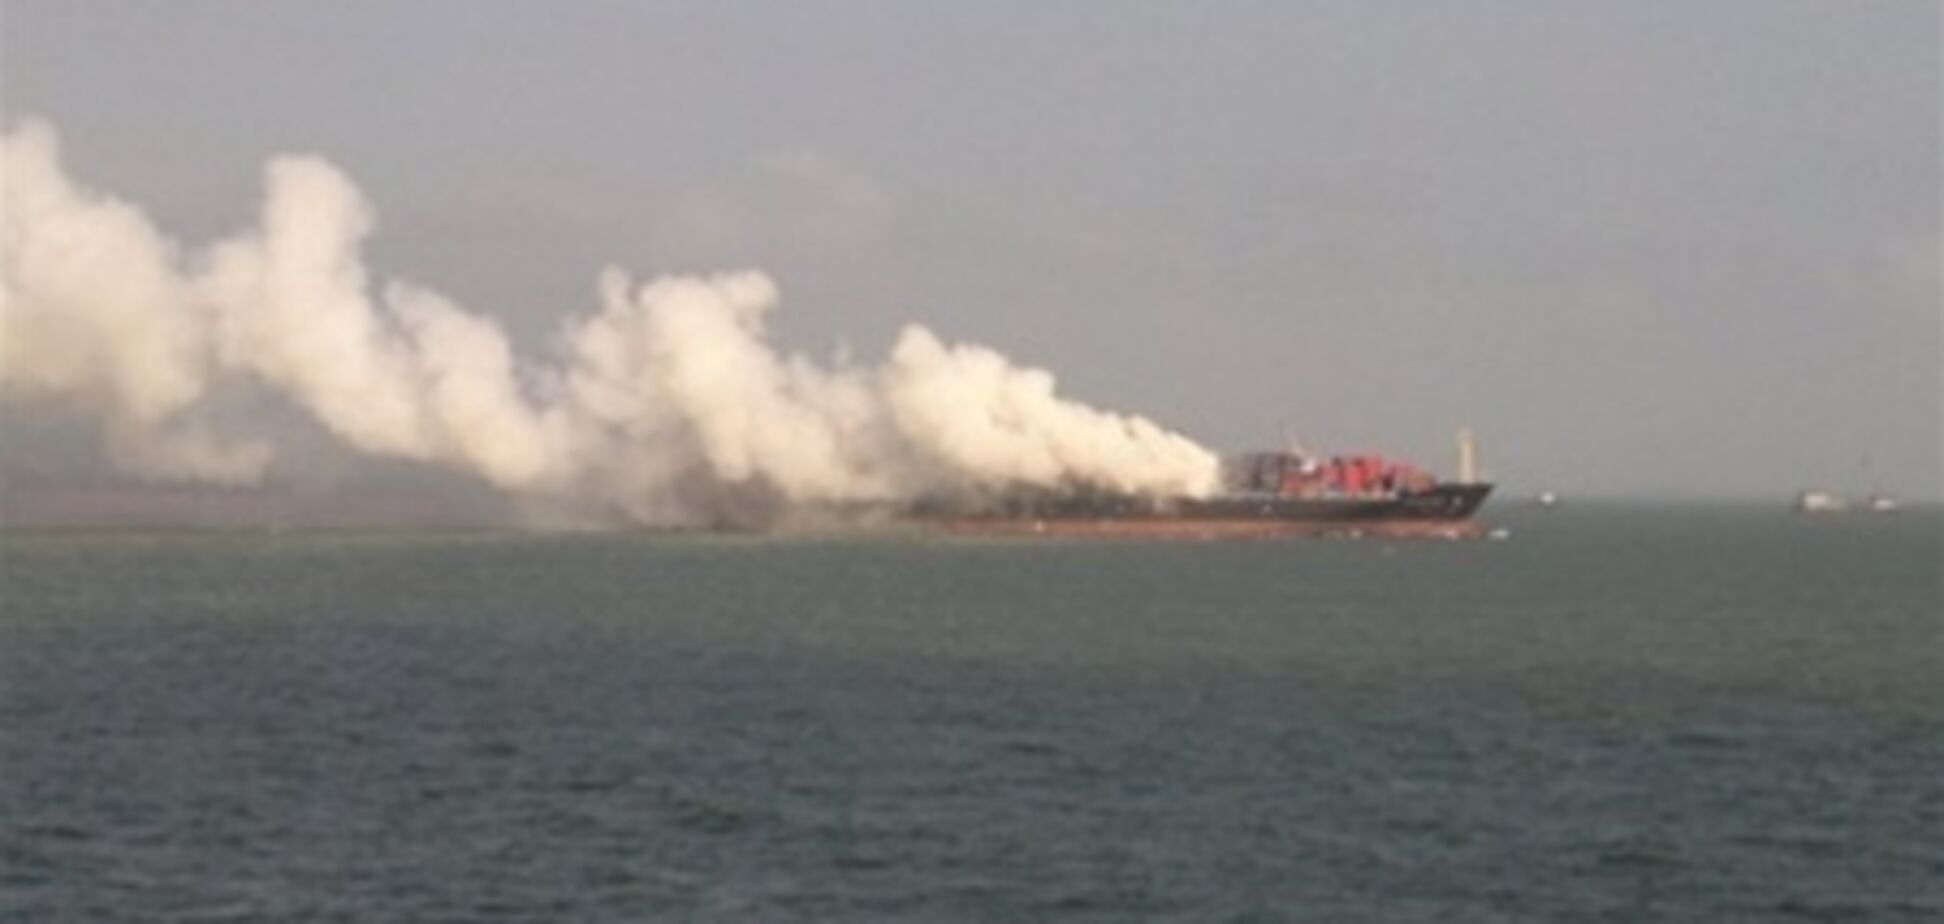 Судно с украинцами на борту сгорело в порту Японии